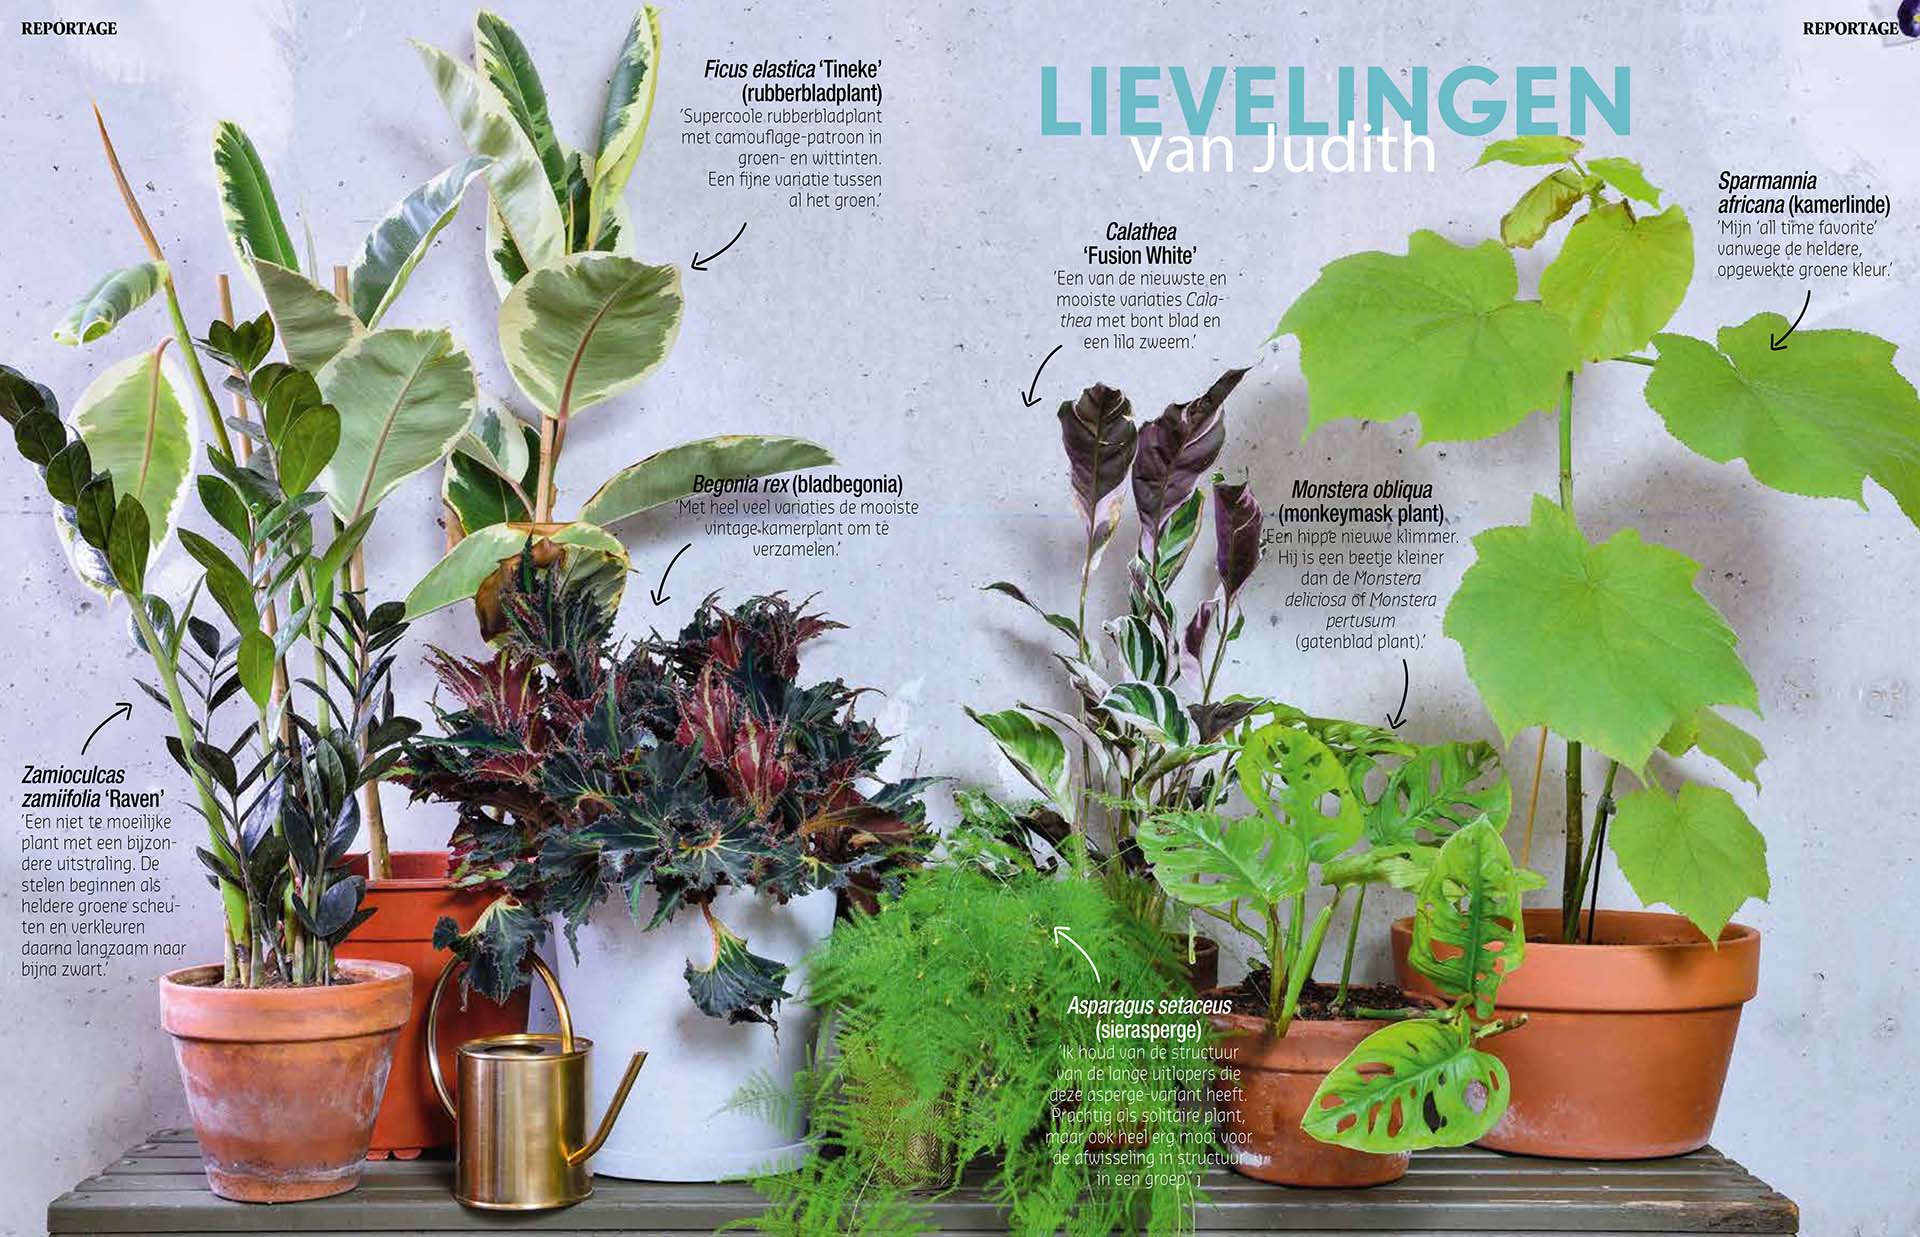 Publicatie over de kamerplanten van Judith Baehner. In Groei & Bloei magazine.